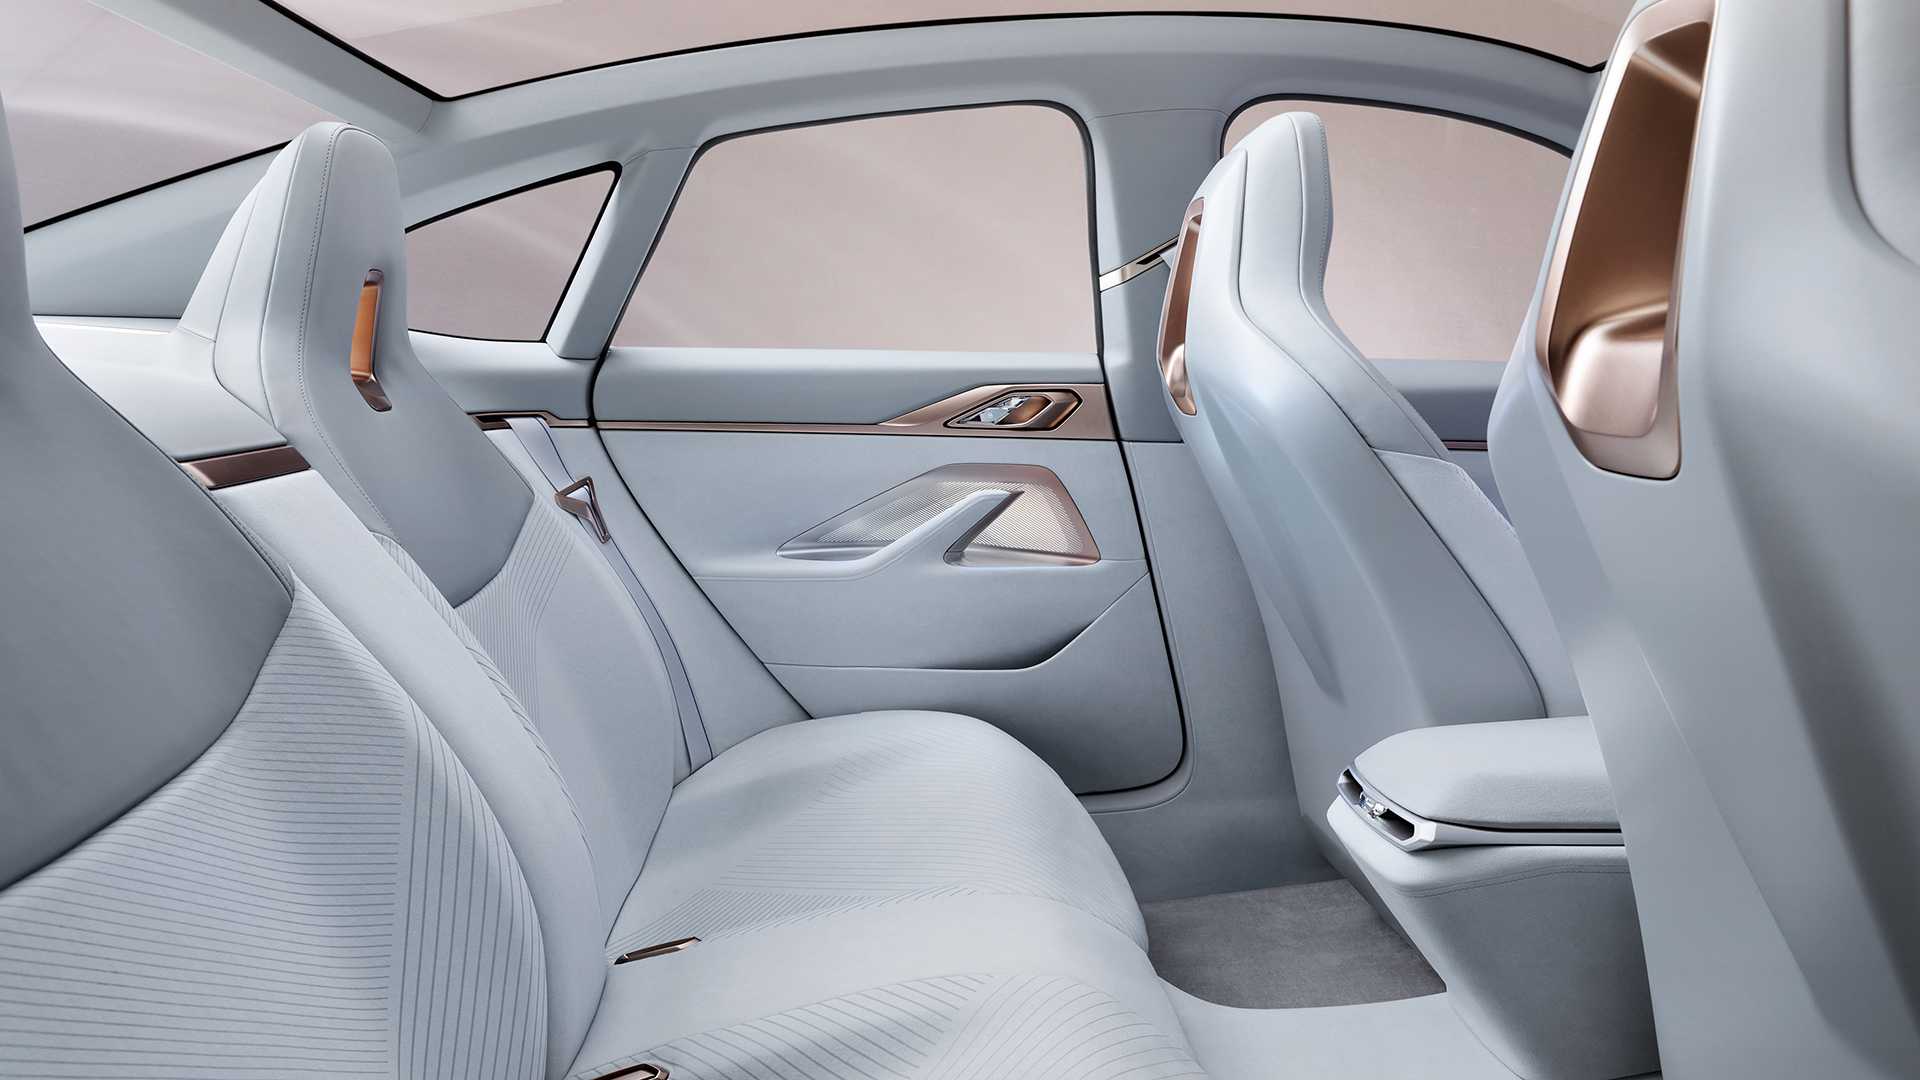 BMW i4 concept 2020